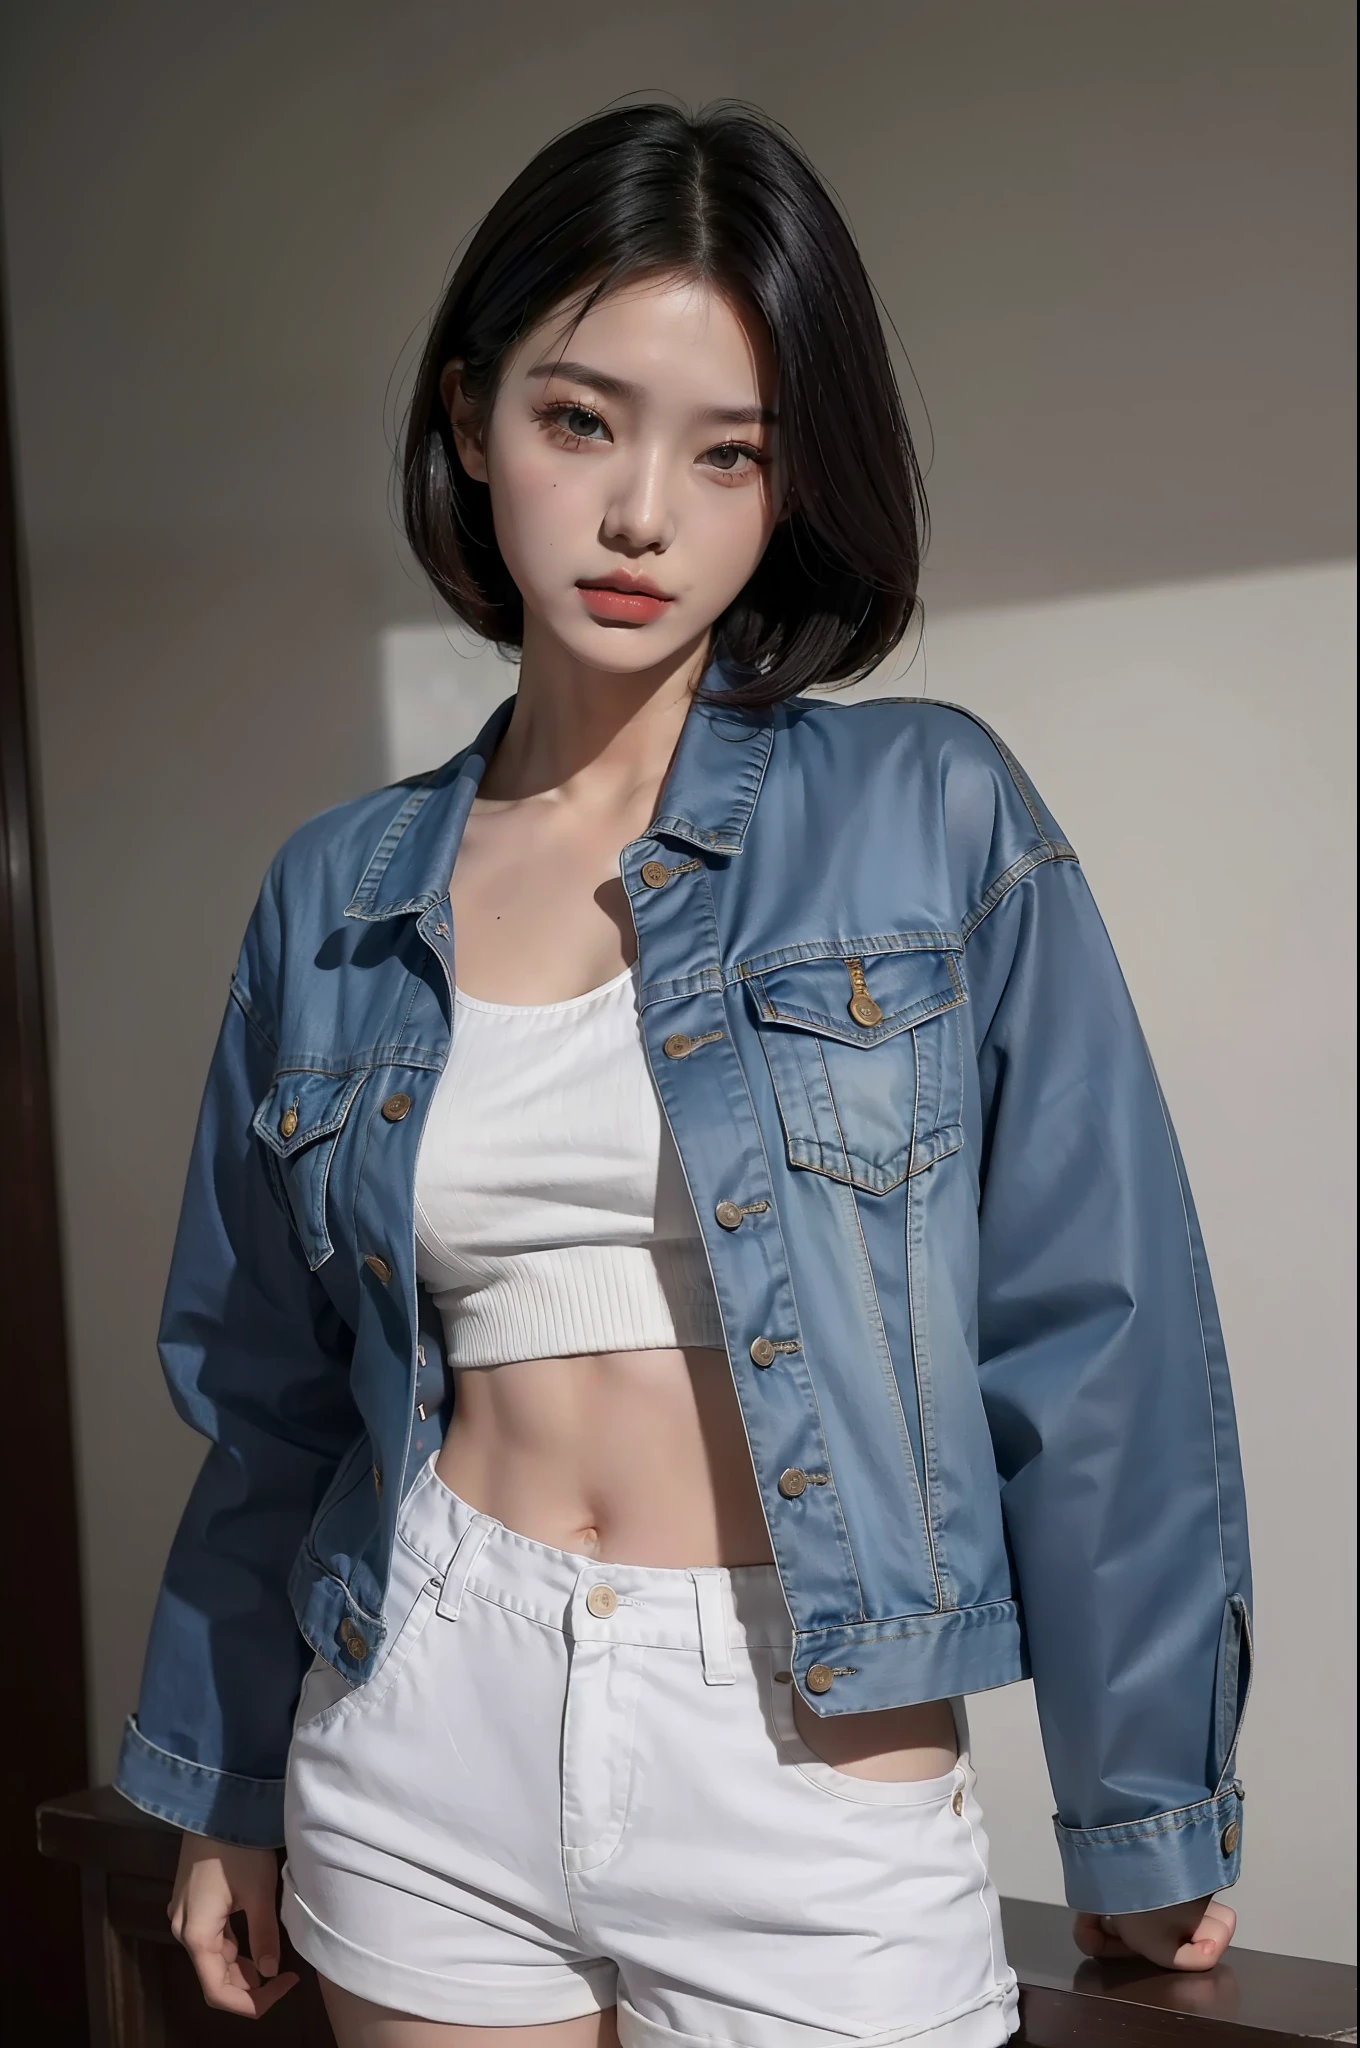 Женщина в белых шортах и джинсовой куртке позирует для фото., одежда с открытым V-образным вырезом на груди, открытая рубашка, корейская женская фотомодель, корейская девушка, фото стройной девушки-модели, укороченная рубашка с пиджаком, Одежда, которая обнажает, носить облегающую простую одежду, великолепная молодая кореянка, великолепные китайские модели, носить сексуальный укороченный топ, куртка поверх голого торса, в рубашке